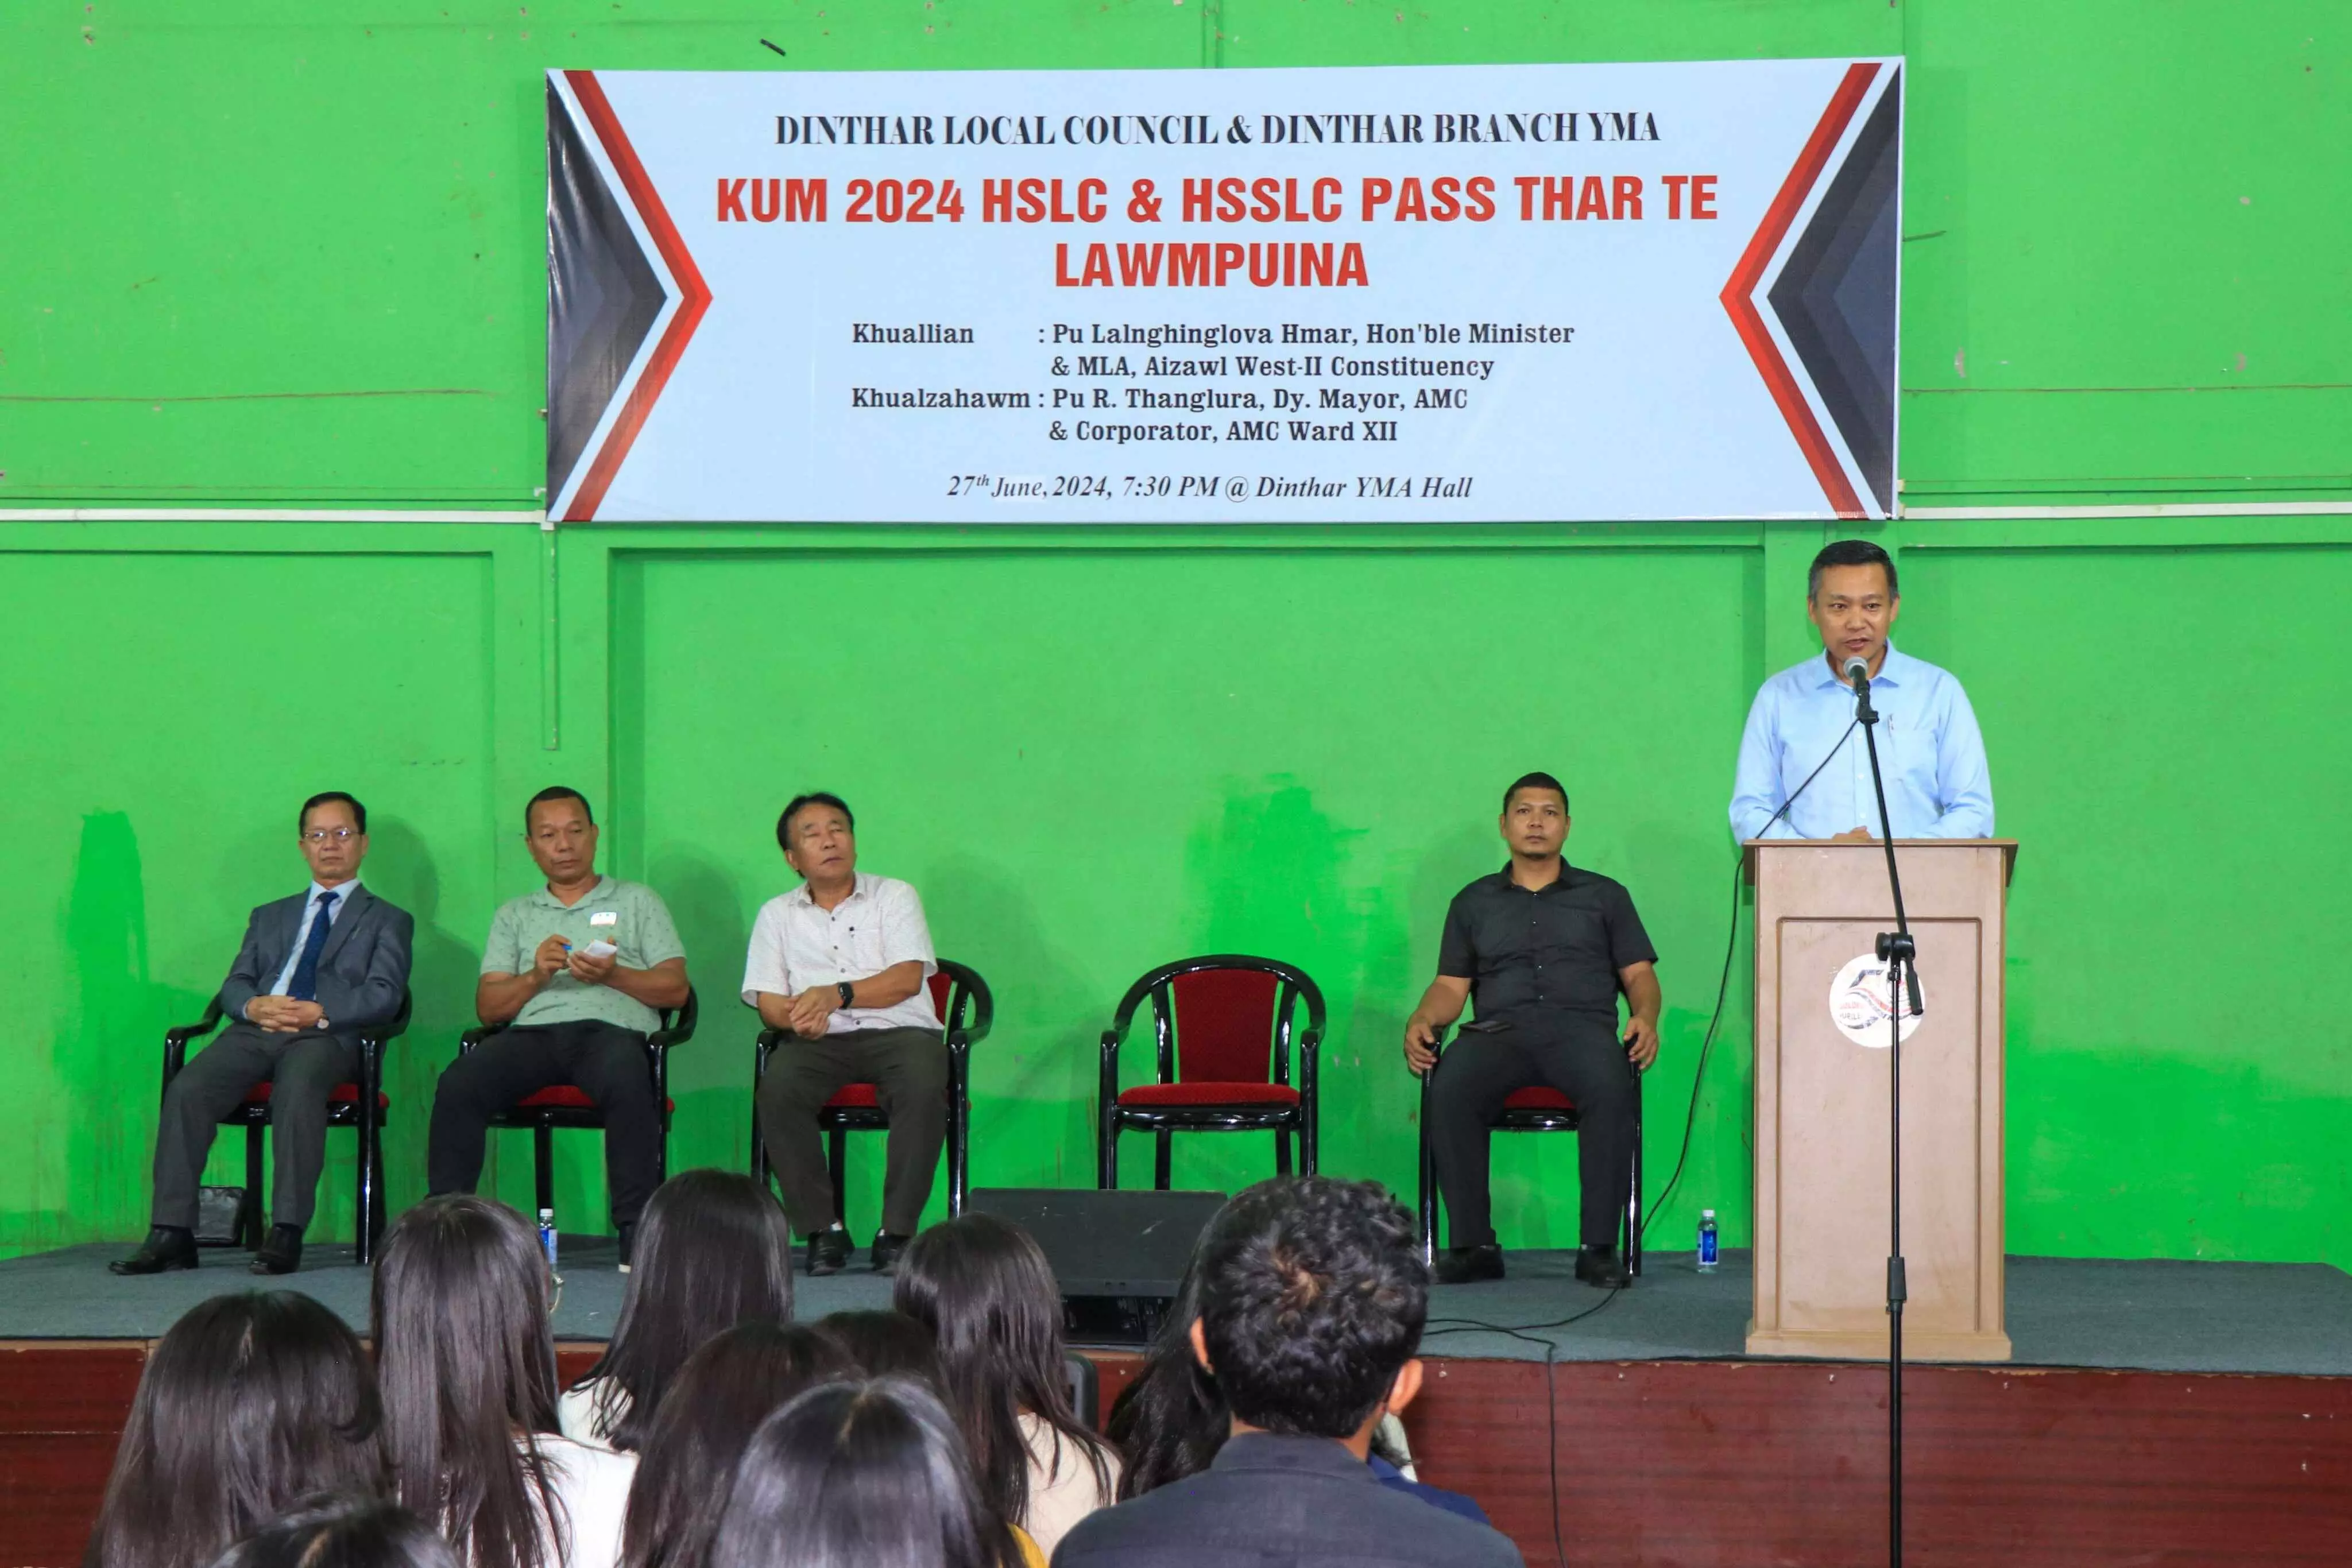 Mizoram News: खेल एवं युवा मामलों के मंत्री पु लालनघिंगलोवा हमार ने दिन्थर वेंग के छात्रों को बधाई दी